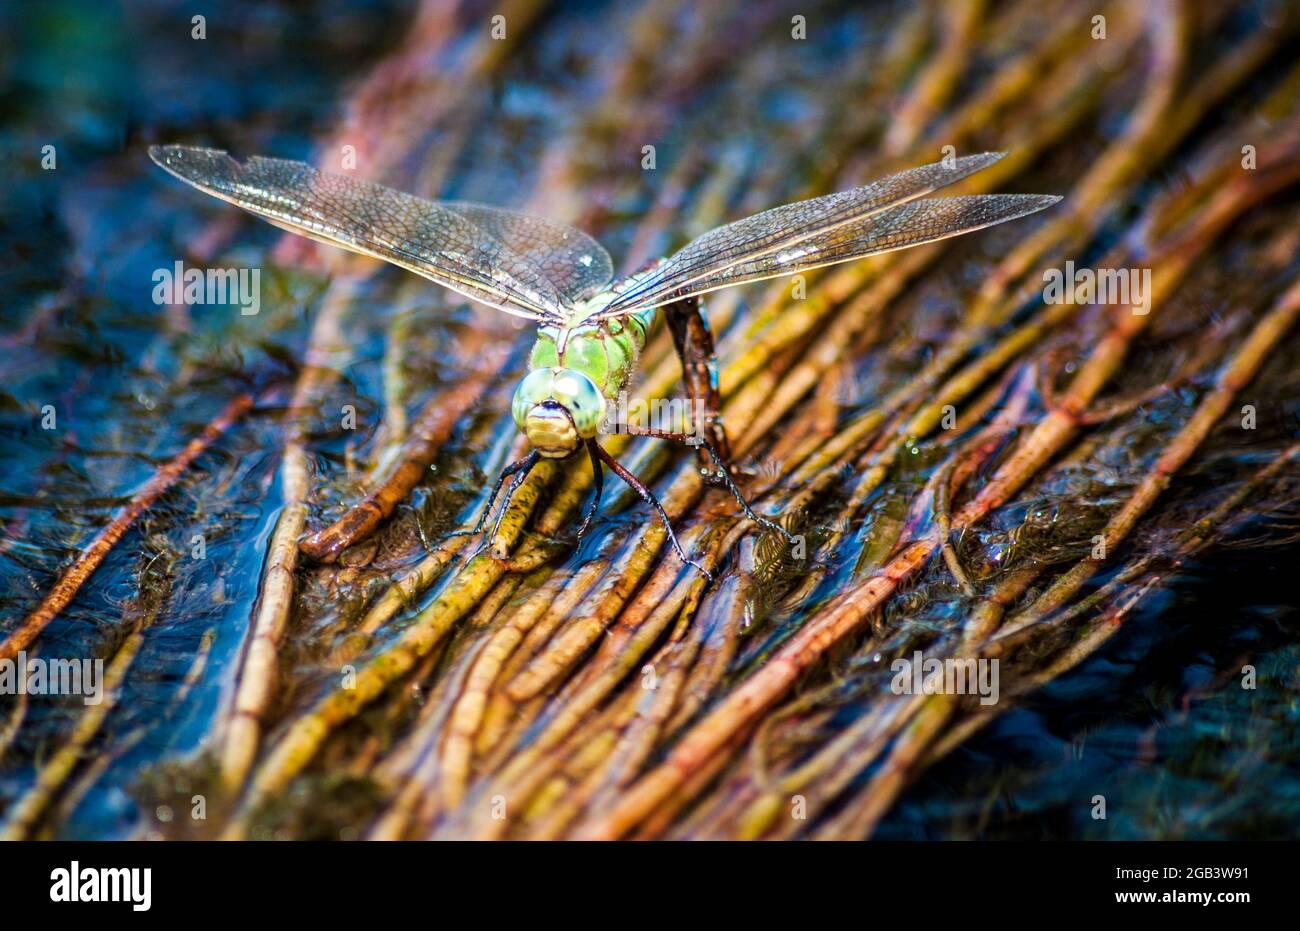 Il drago vola nell'habitat naturale. Macro immagini con bokeh. Dragonfly è un insetto appartenente all'ordine Odonata. Foto Stock